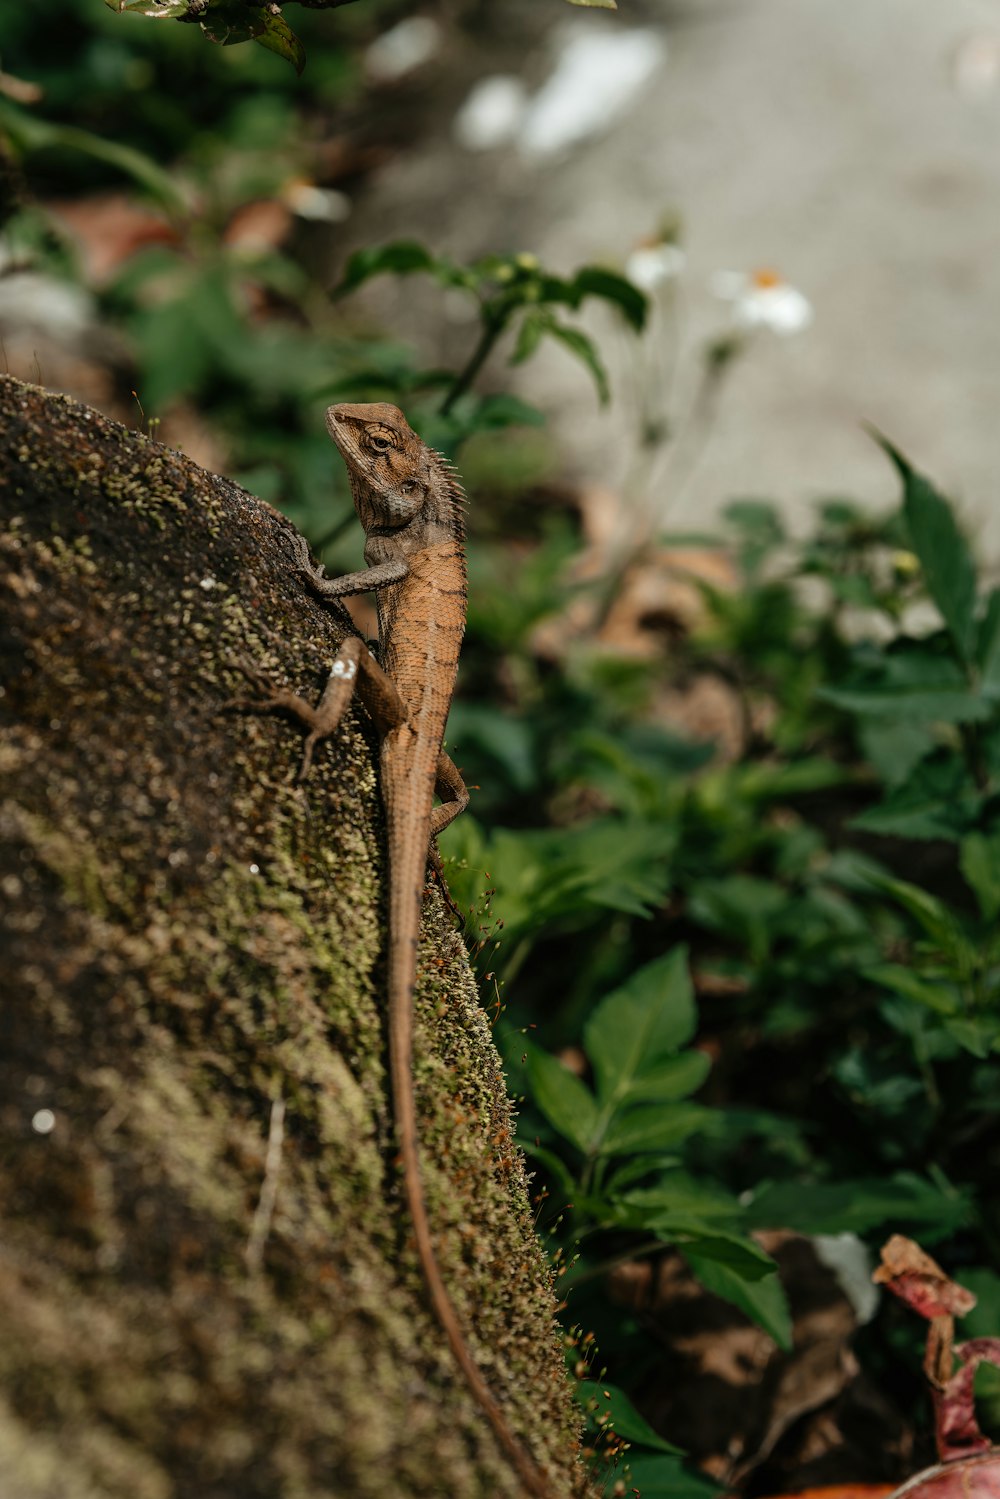 a lizard sitting on a rock in a garden